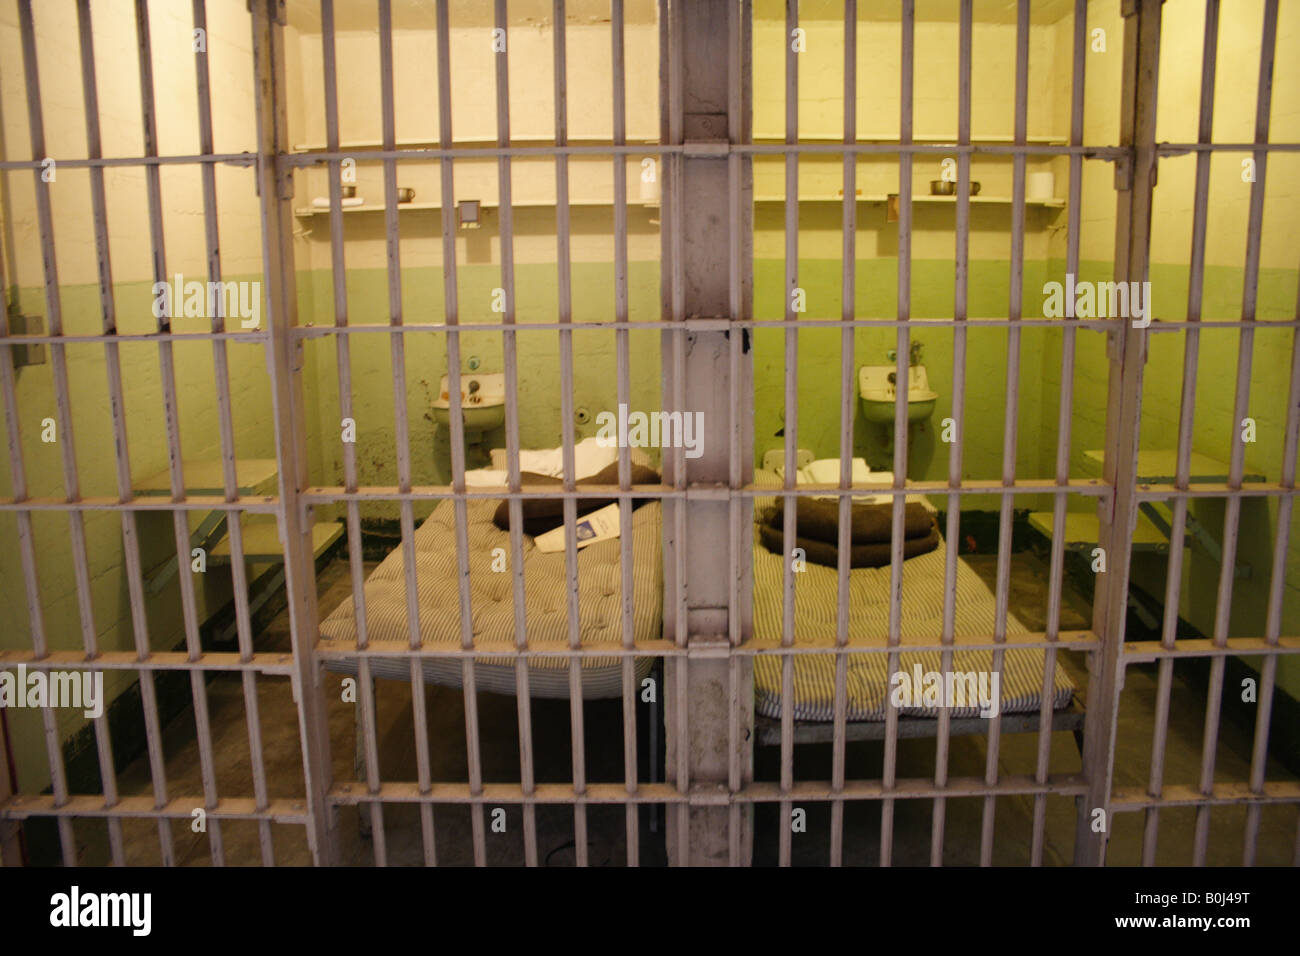 Alcatraz prison cells Stock Photo